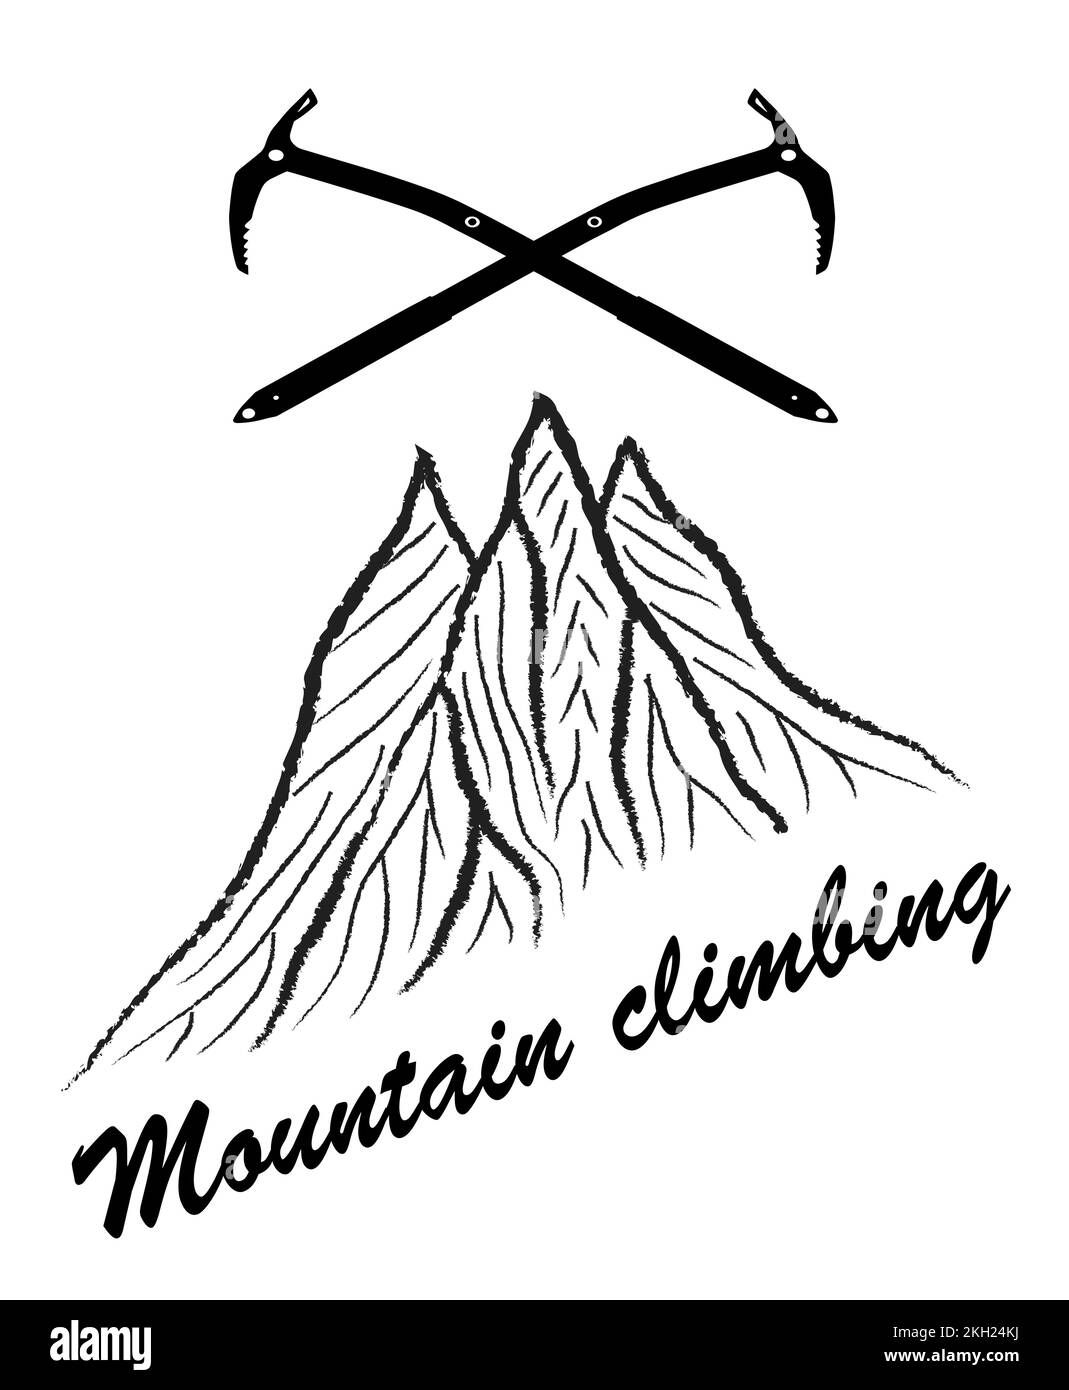 Montagnes et deux axes de glace avec texte escalade de montagne, logo d'illustration vectorielle, noir et blanc Illustration de Vecteur